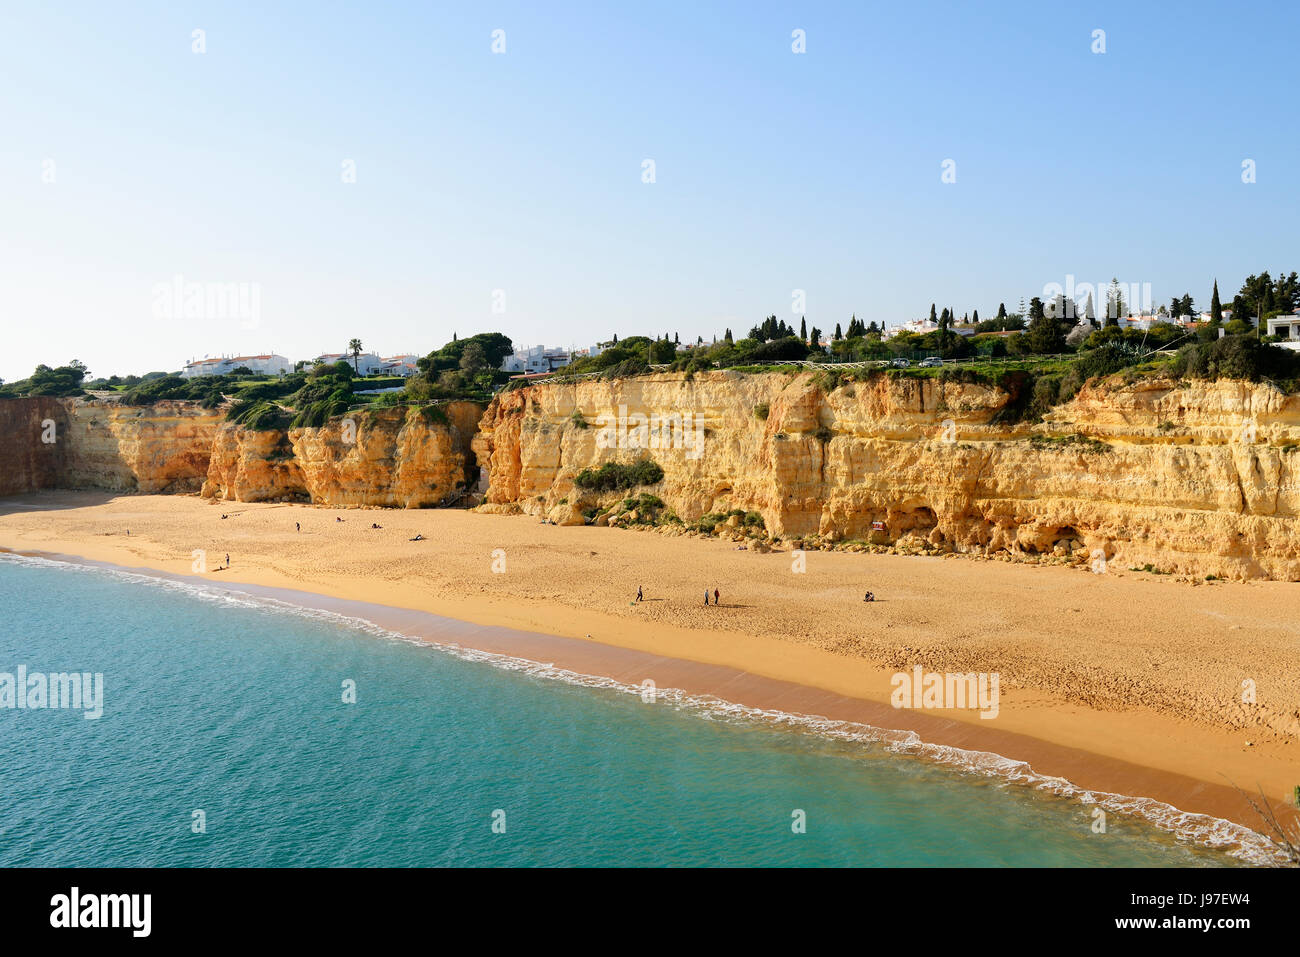 La playa de Senhora da Rocha (Nuestra Señora de la roca). Algarve, Portugal Foto de stock